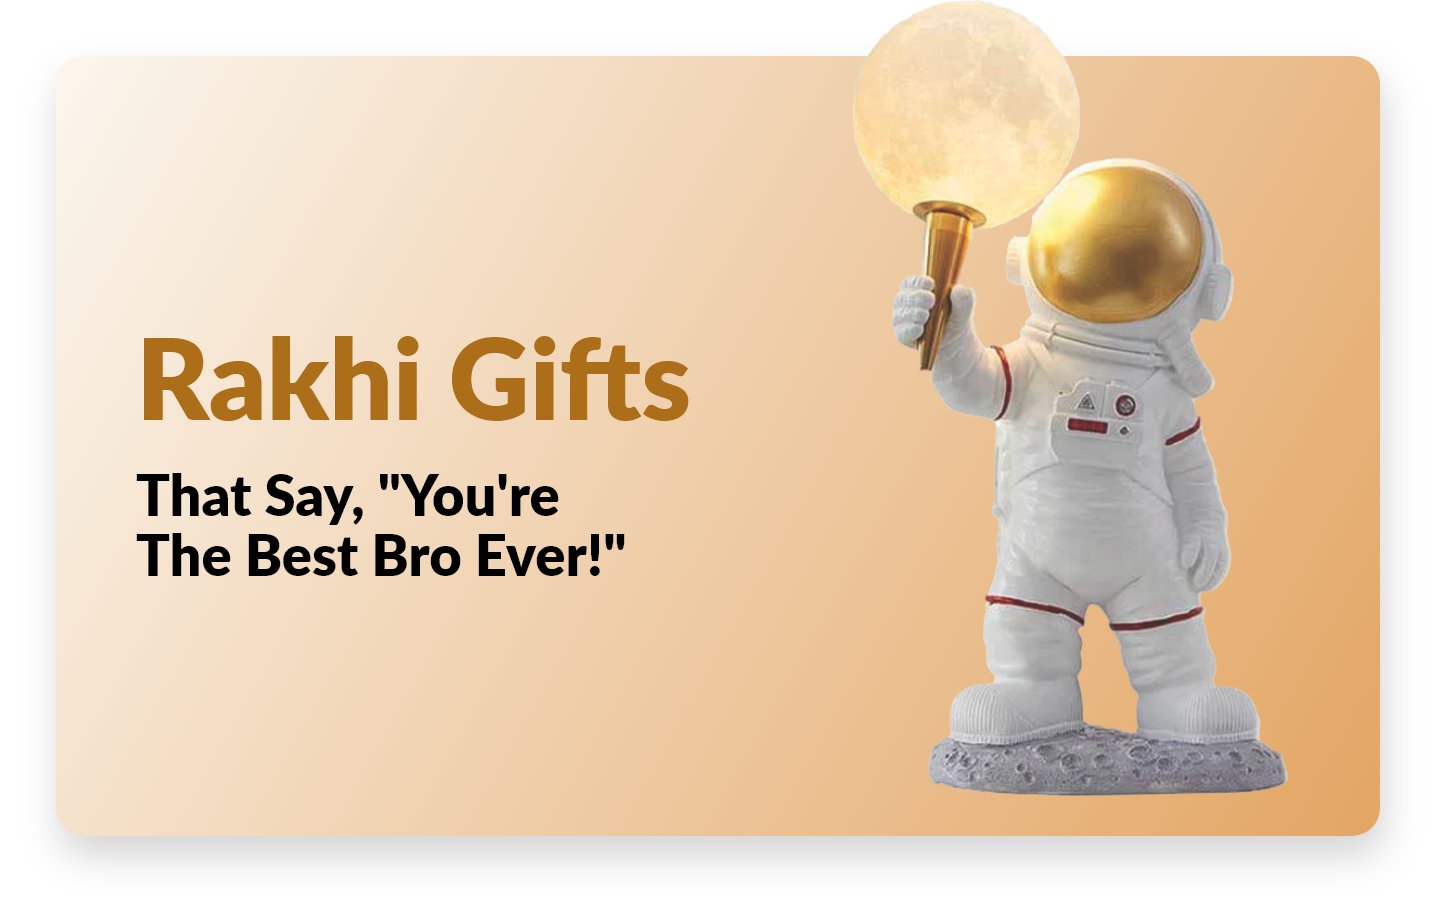 rakhi gift box | handmade gift for brother | rakhi gift ideas for brother |  diy rakhi gift ideas 🔥🔥 - YouTube